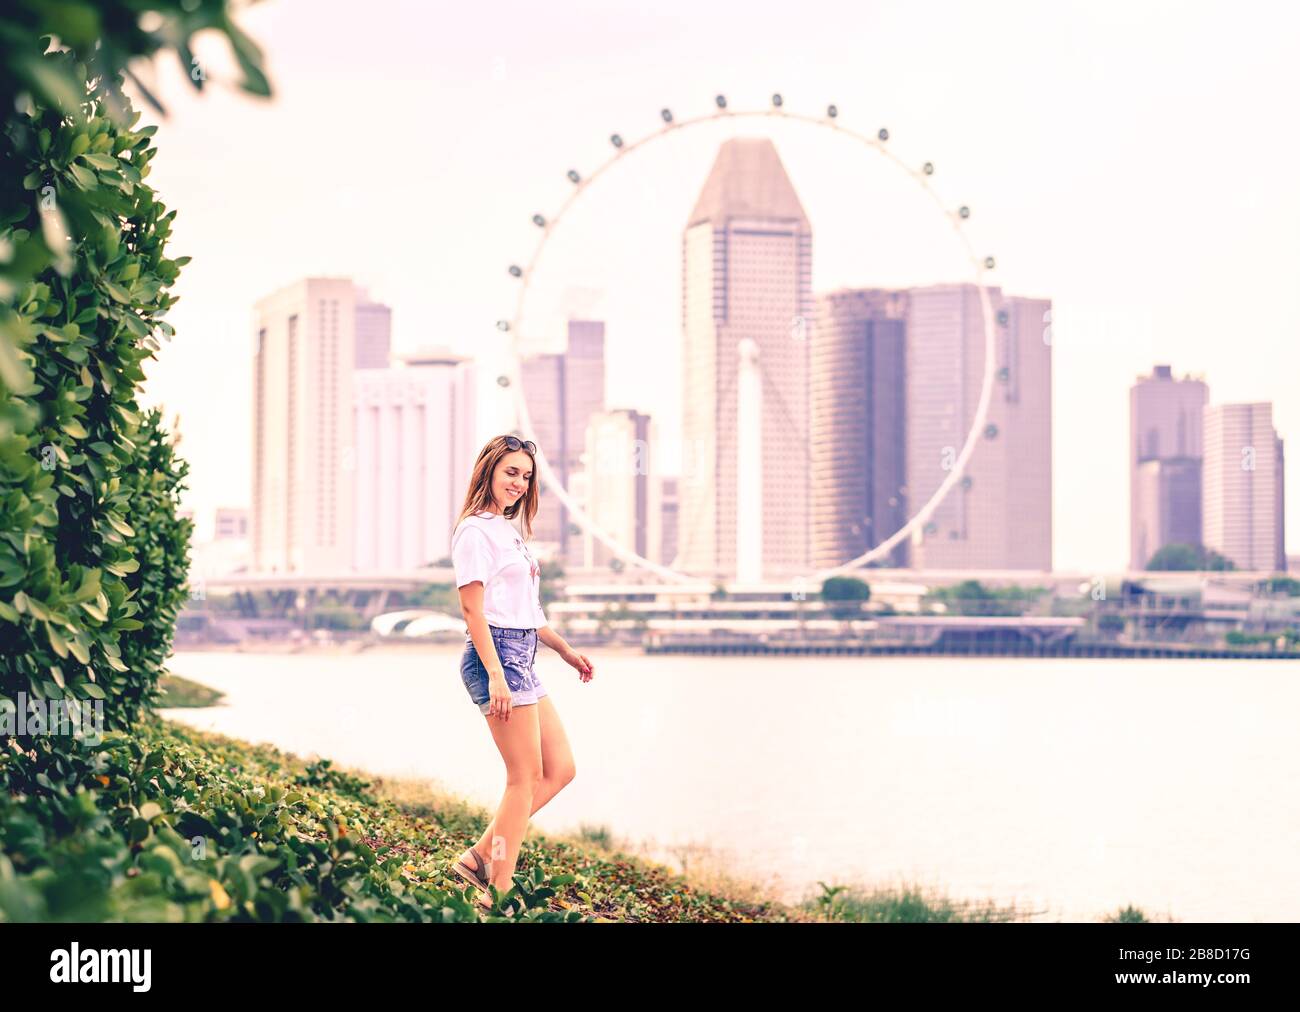 Positive trendige Frau in Jeans-Shorts, die in einem Park im Freien spazieren gehen und die Skyline der Stadt im Hintergrund sehen. Fröhlicher modischer Lebensstil. Stockfoto